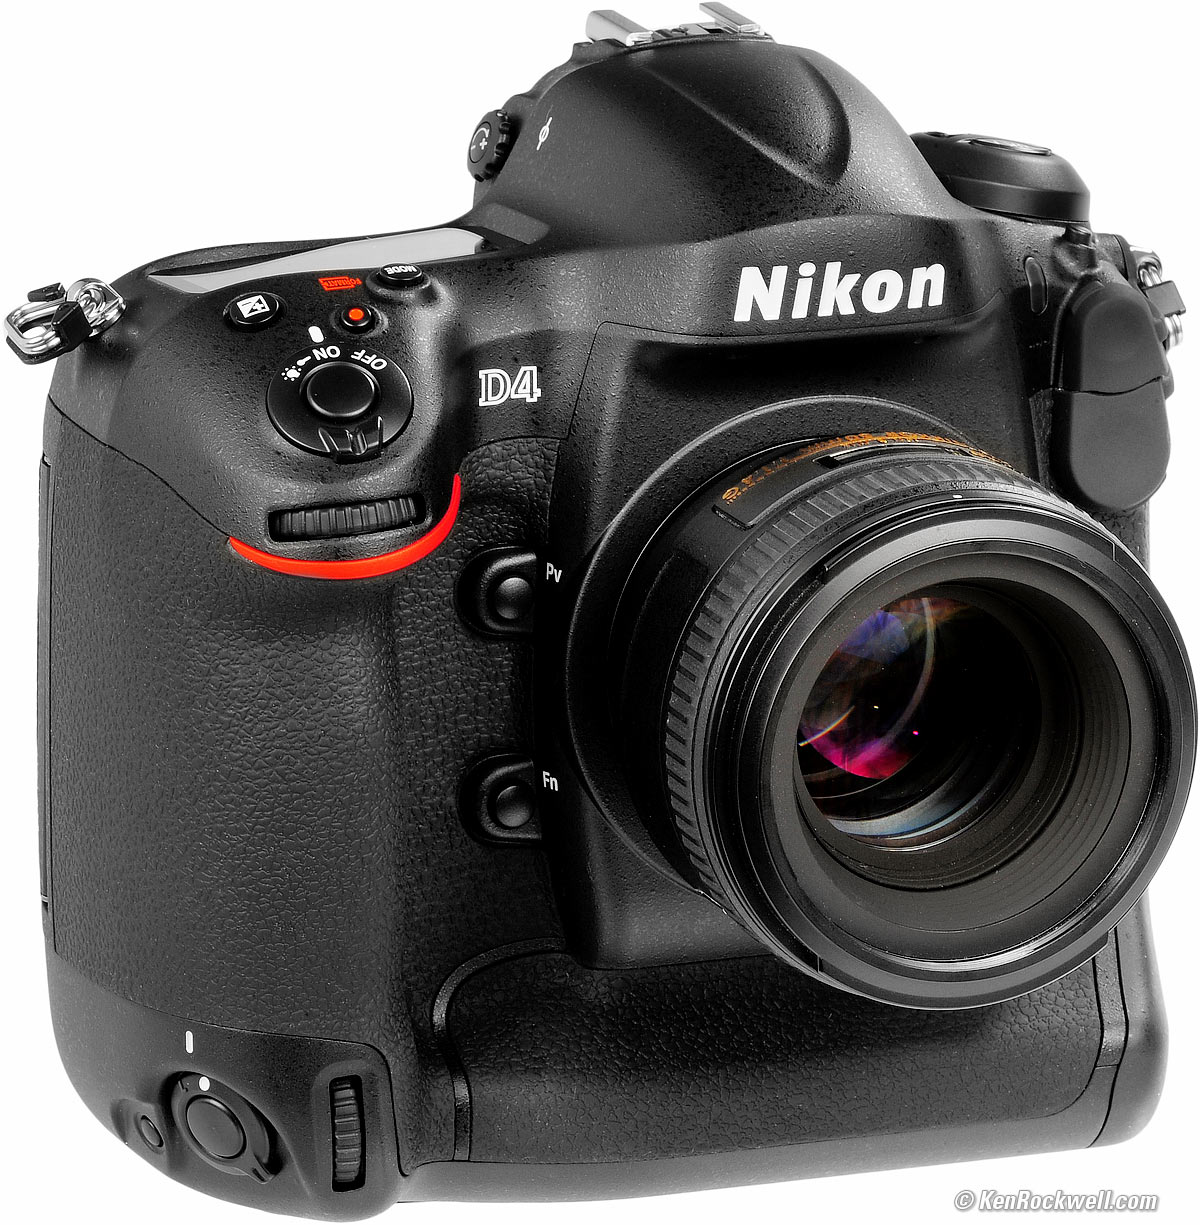 Celsius Kwijting Verlichten Nikon D4 Review